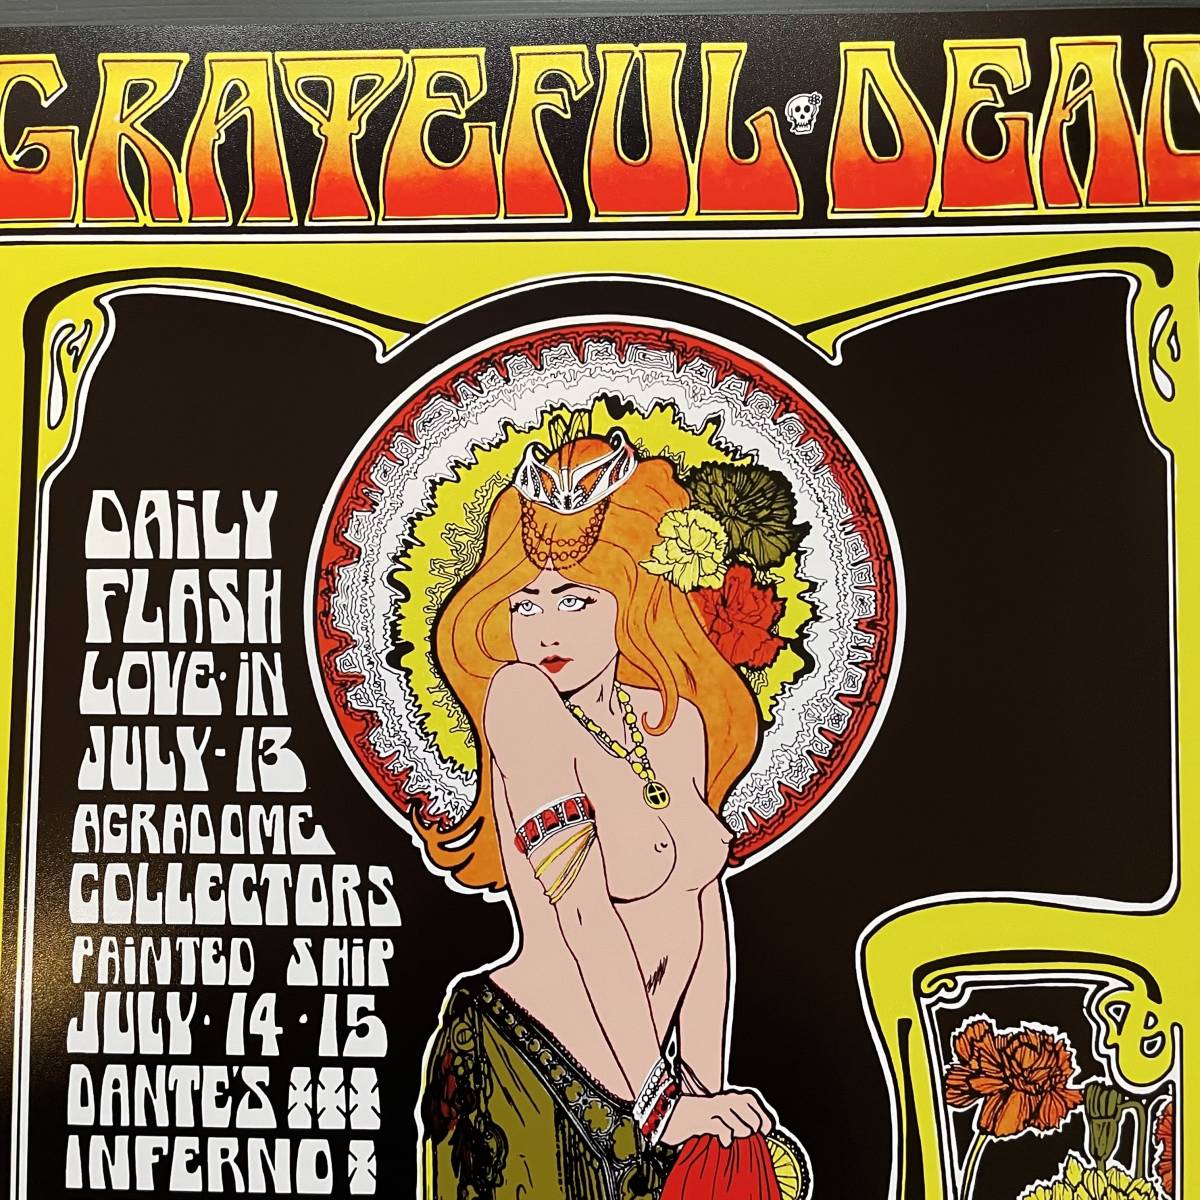 ポスター★グレイトフル・デッド バンクーバー1967 コンサート(48.3×32.9cm)★Grateful Dead concert at Vancouver’s Agradome_画像4